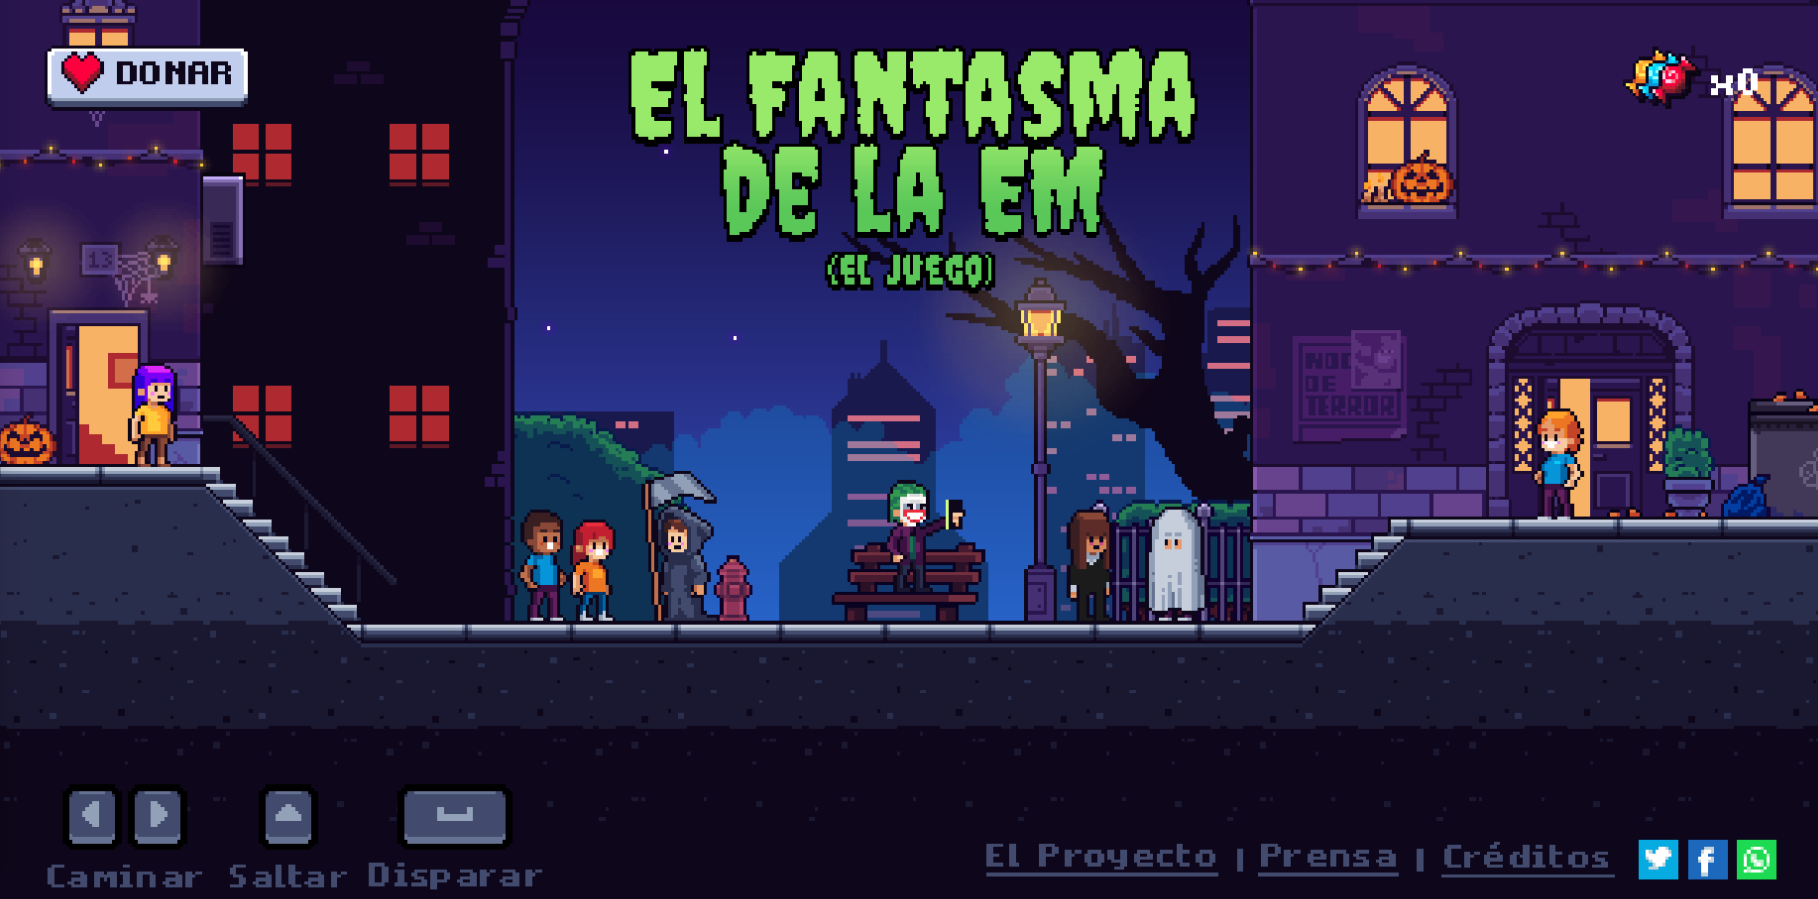 «El Fantasma de la EM», un videojuego creado para concienciar